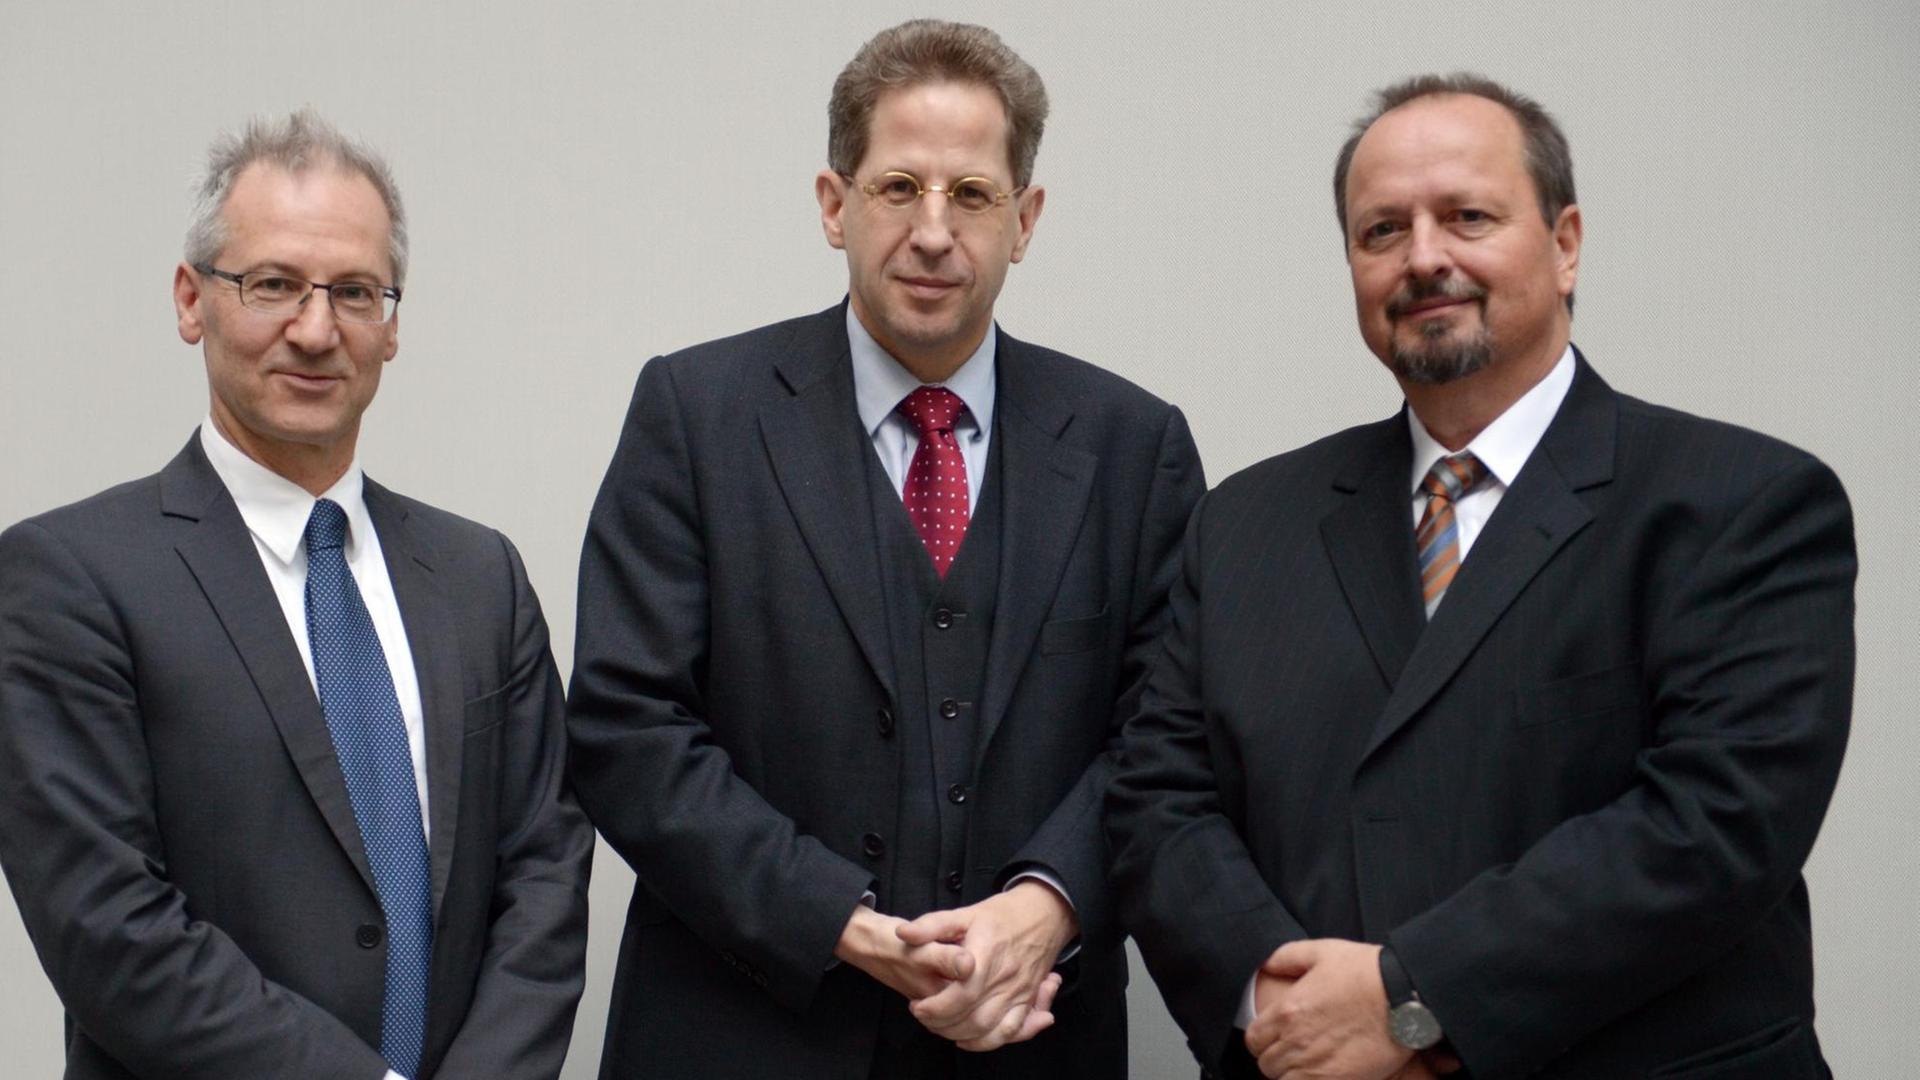 Die Historiker Michael Wala (r) und Constantin Goschler (l) und der BfV-Präsident Hans-Georg Maaßen stehen am 01.10.2013 in der Bundespressekonferenz in Berlin